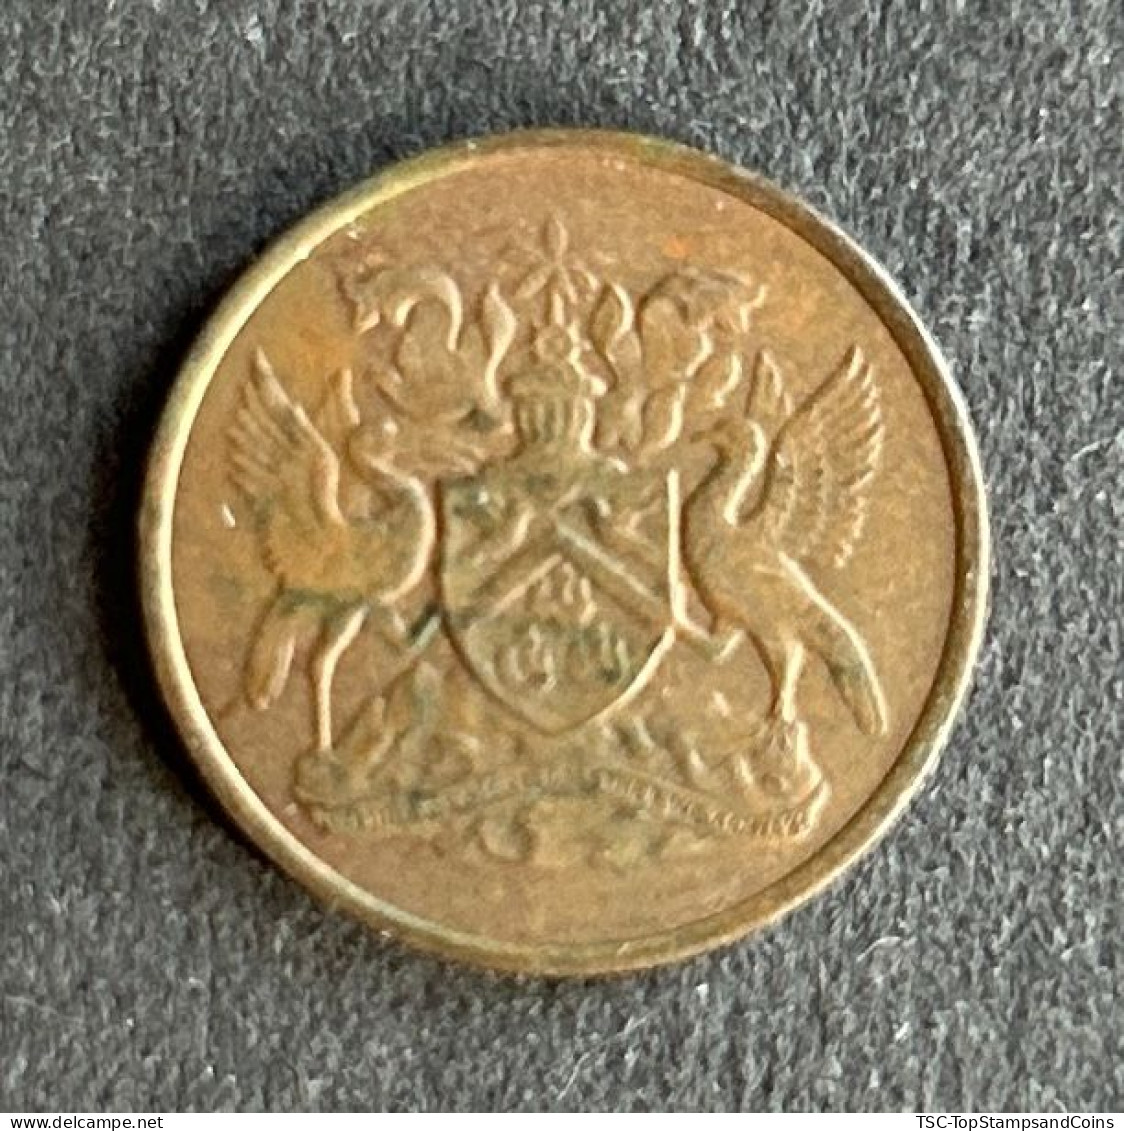 $$T&B400 - Elizabeth II - Coat Of Arms - 1 Cent Coin - Trinidad & Tobago - 1973 - Trinidad & Tobago